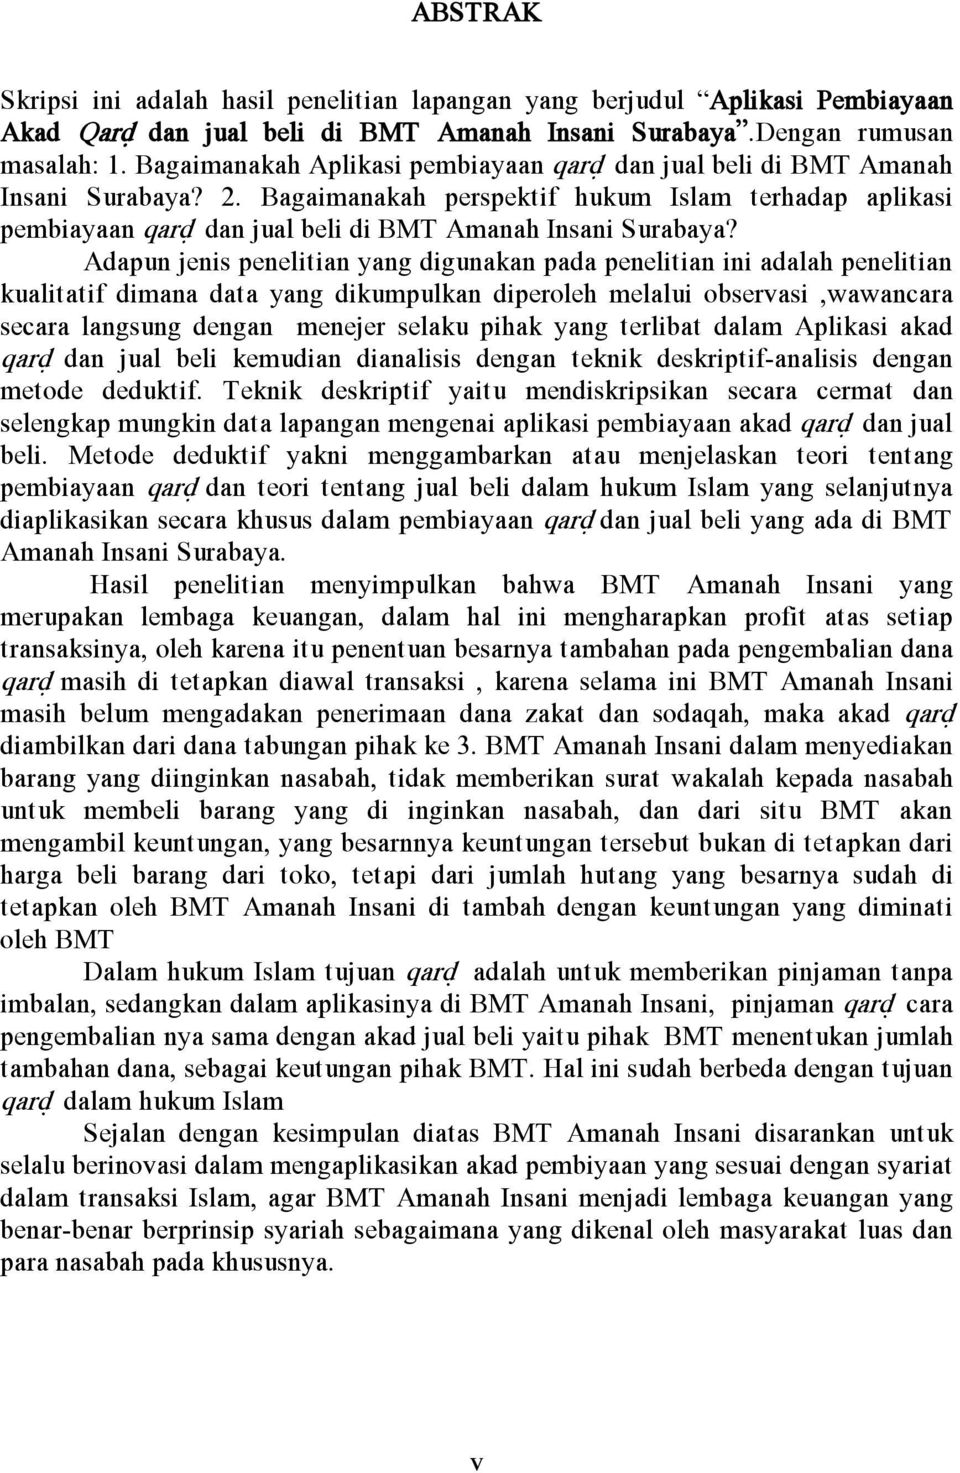 Bagaimanakah perspektif hukum Islam terhadap aplikasi pembiayaan qard} dan jual beli di BMT Amanah Insani Surabaya?